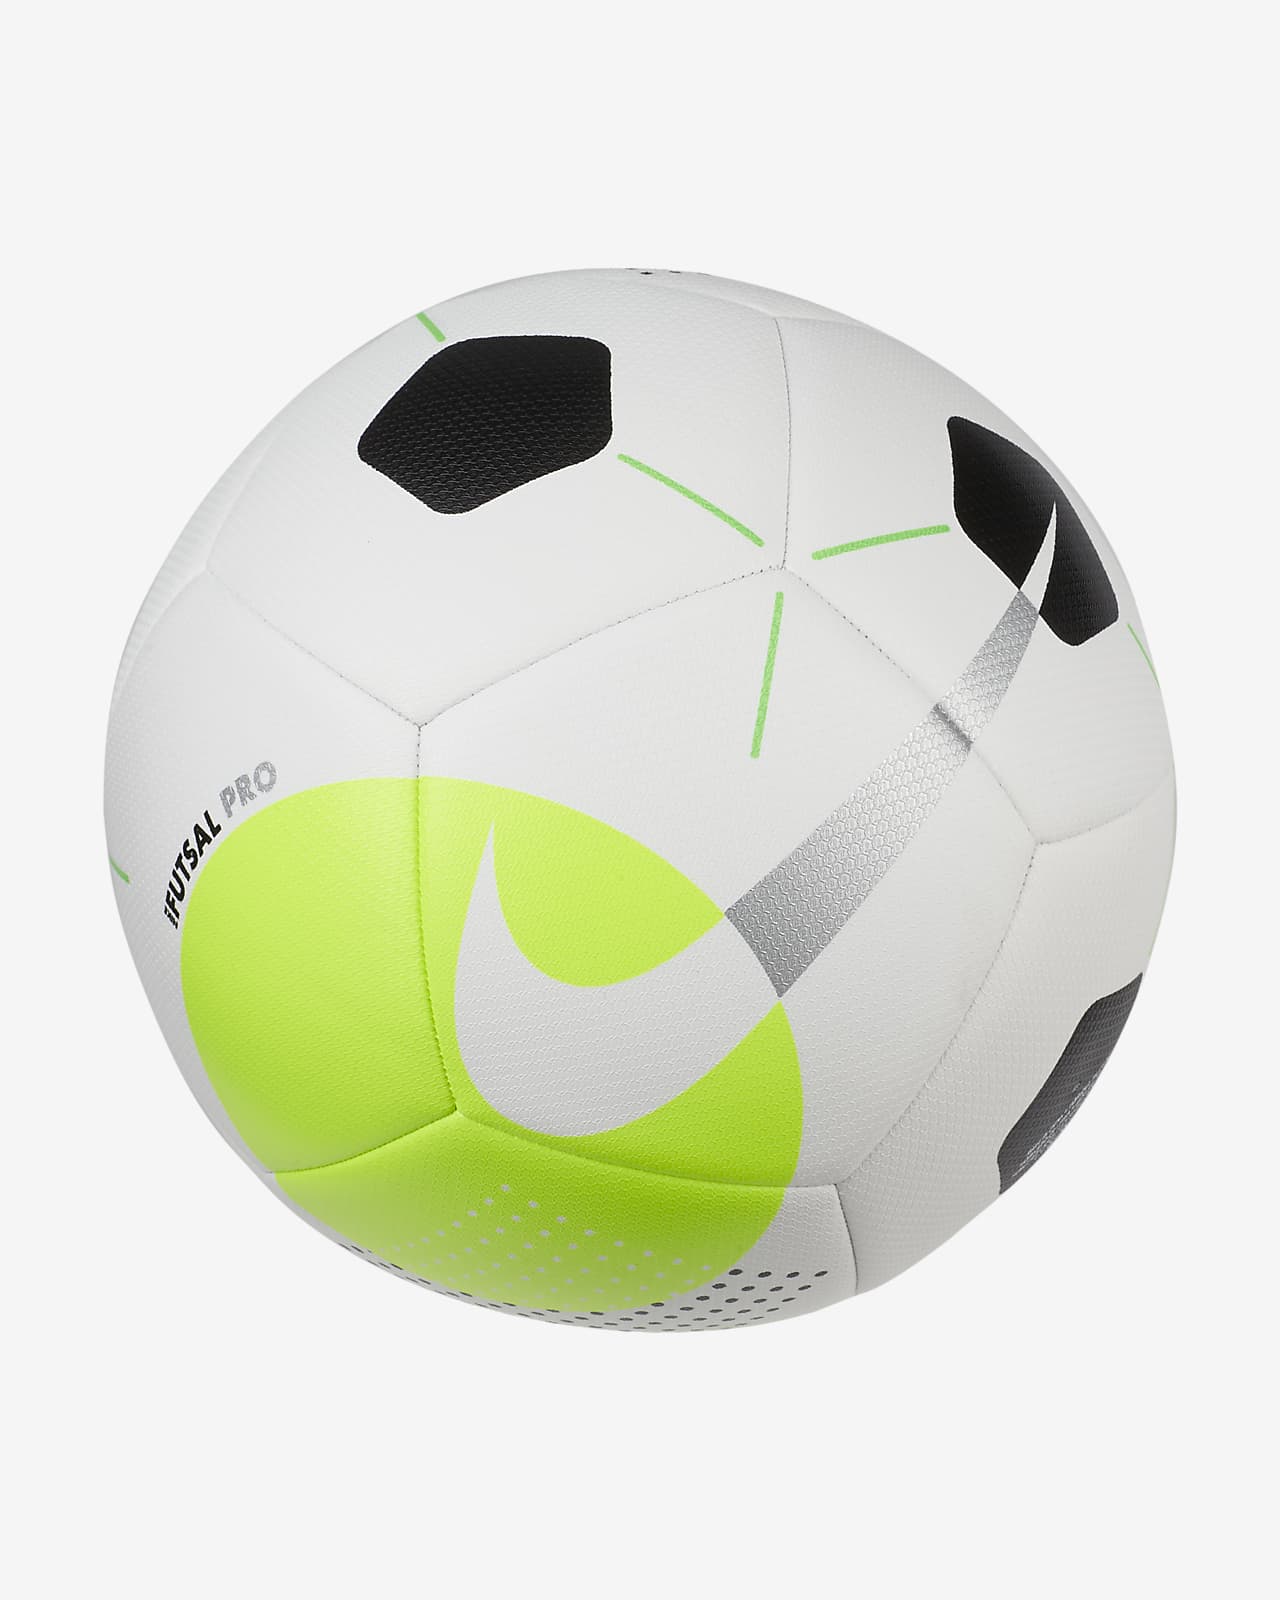 Balones de fútbol sala 3.5 ⚽️🥅 ¡disponibles! • • Escríbenos al dm y  realiza tu pedido 📩 • • #balones #futbol #ejercicio #deporte…